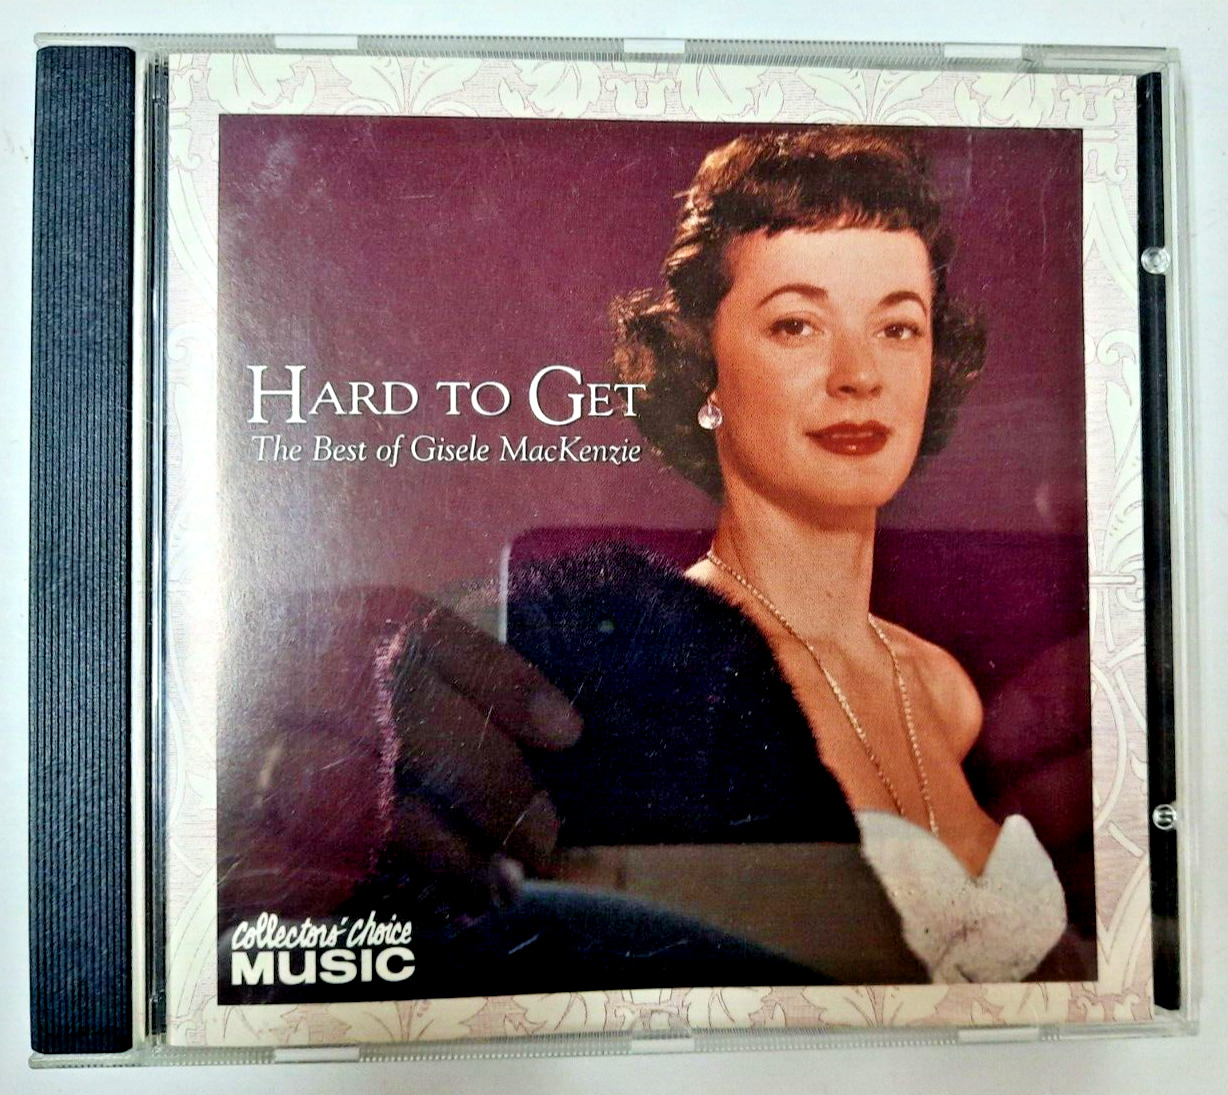 Hard to Get: The Best of Gisele MacKenzie  Gisele MacKenzie music CD  pre-owned